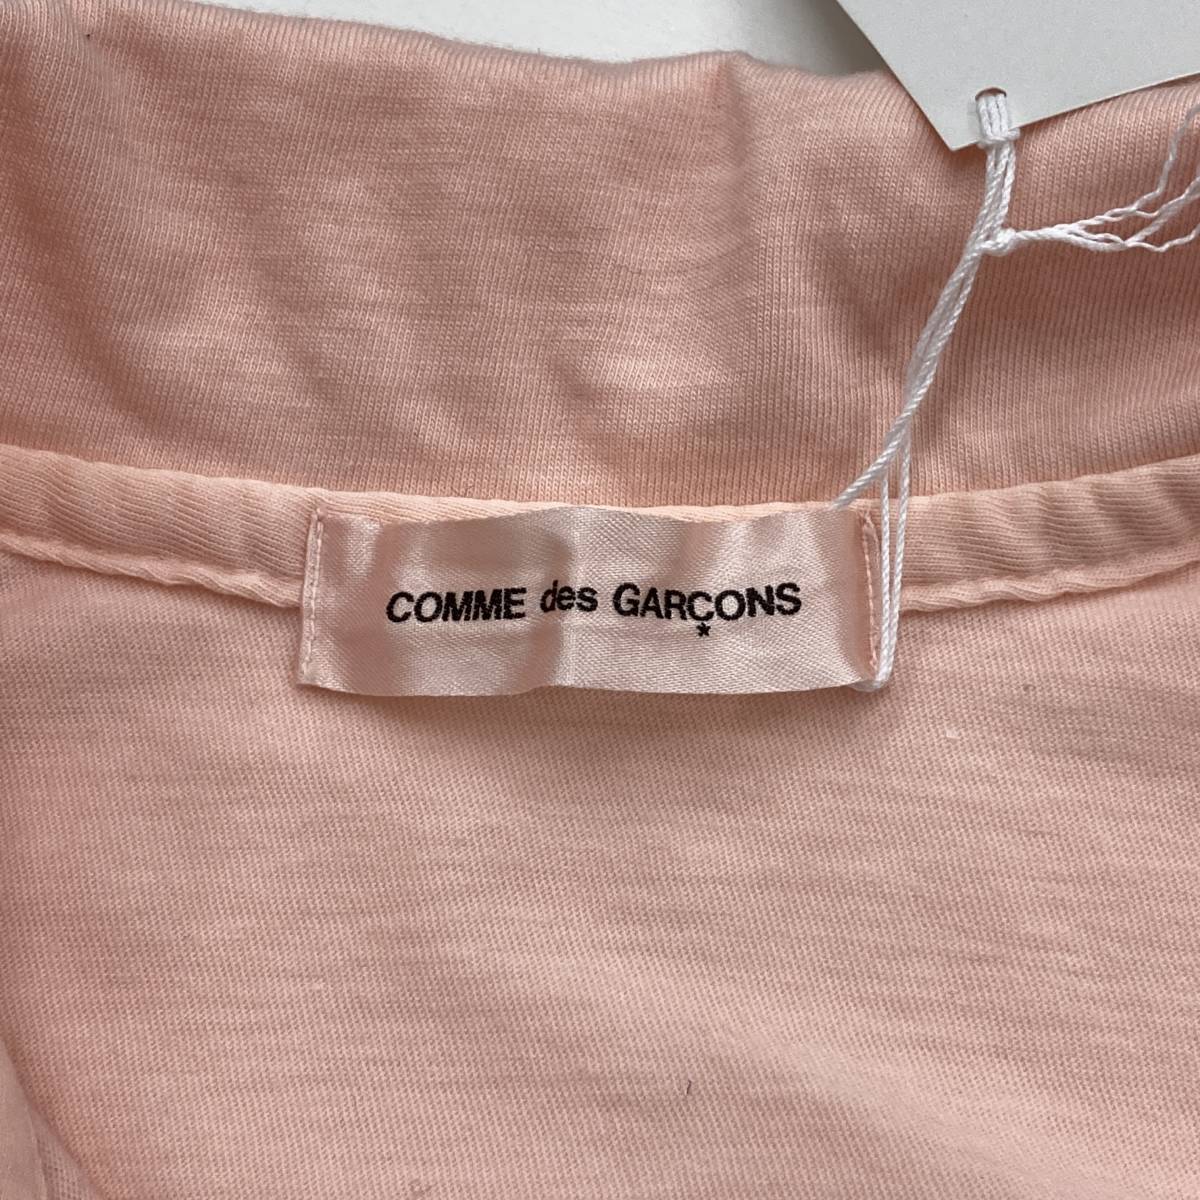 新未使用品 AD1999 COMME des GARCONS 半袖 ポロシャツ ピンク コムデギャルソン カットソー Tシャツ 90s VINTAGE archive 2090236_画像4